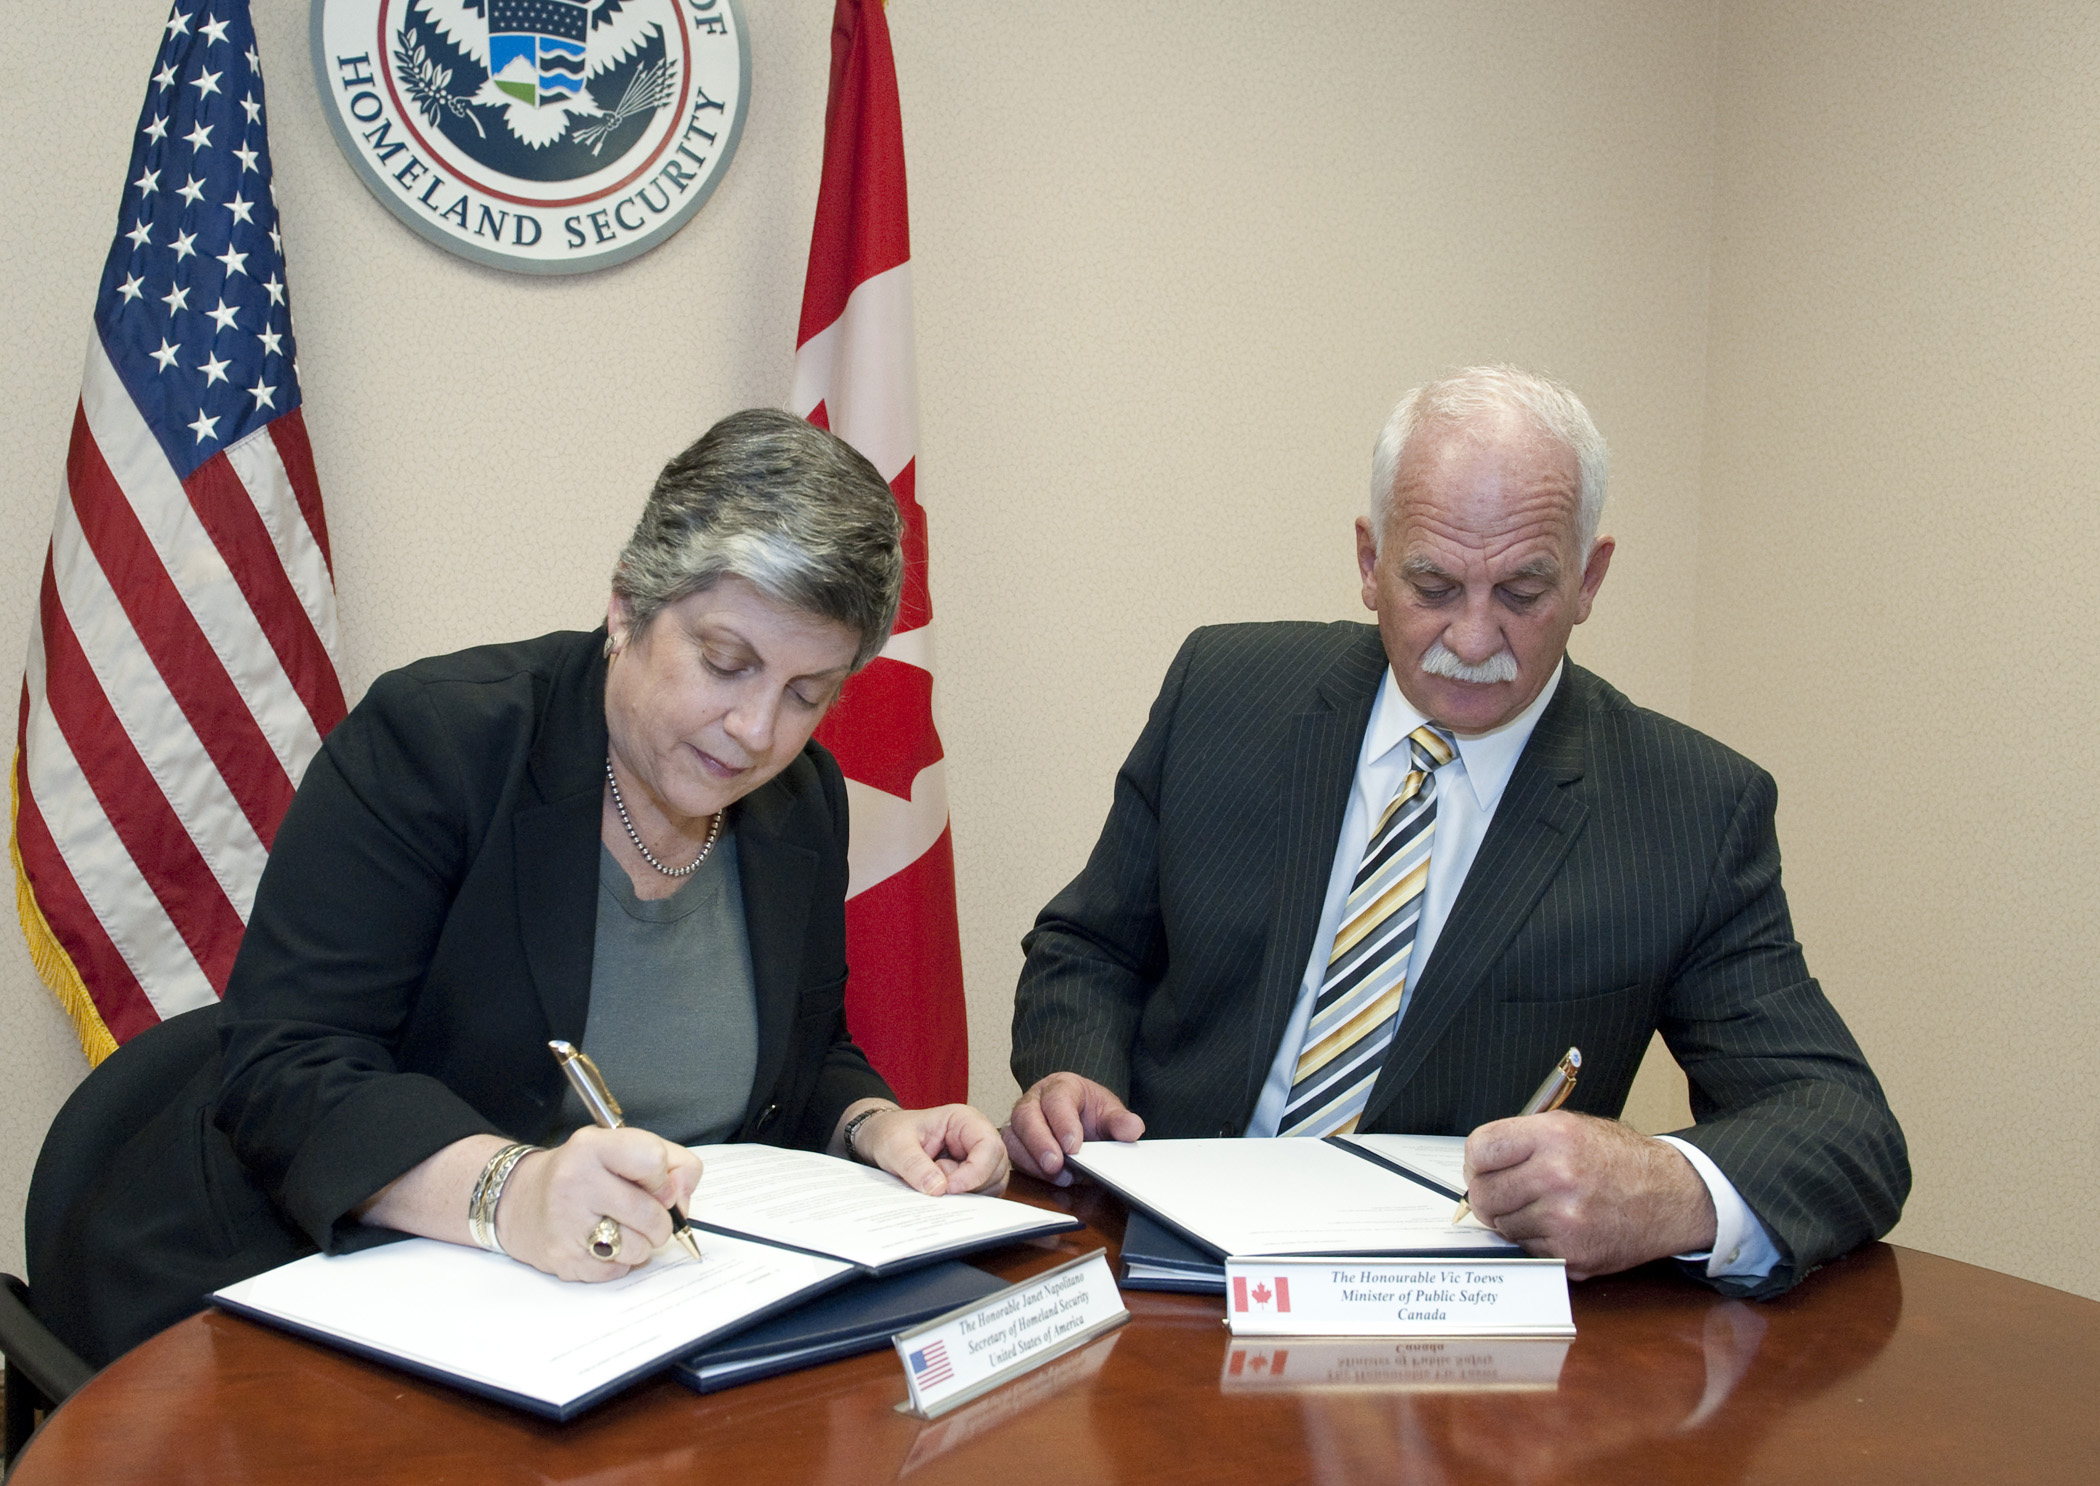 Vic Toews, ministre de la Sécurité publique du Canada, et Janet Napolitano, secrétaire de la Sécurité intérieure des États-Unis